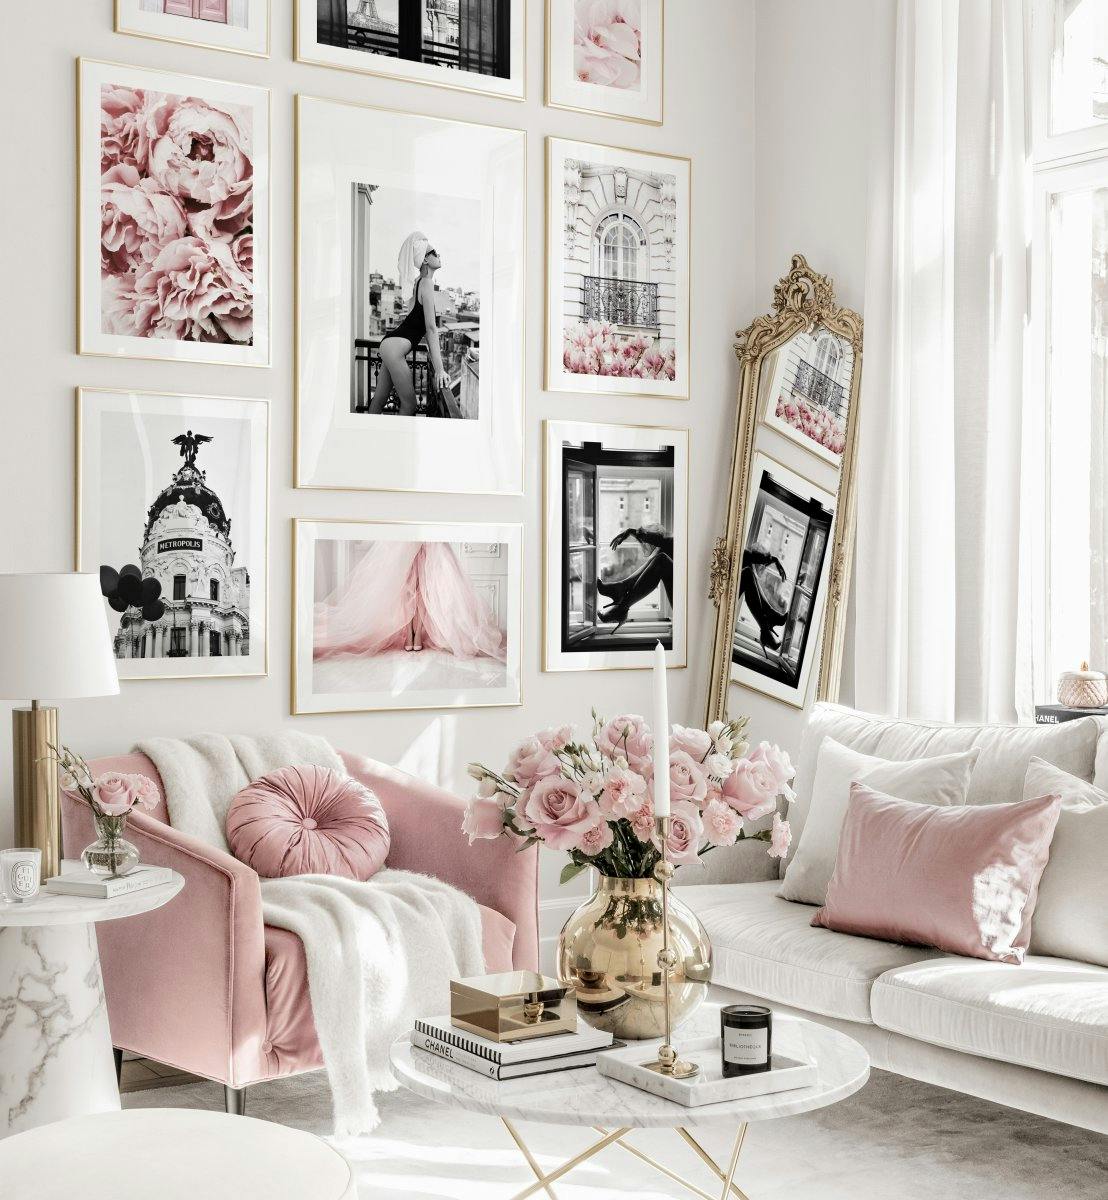 Galerie foto roz tablouri fashion poster cu flori rame aurii